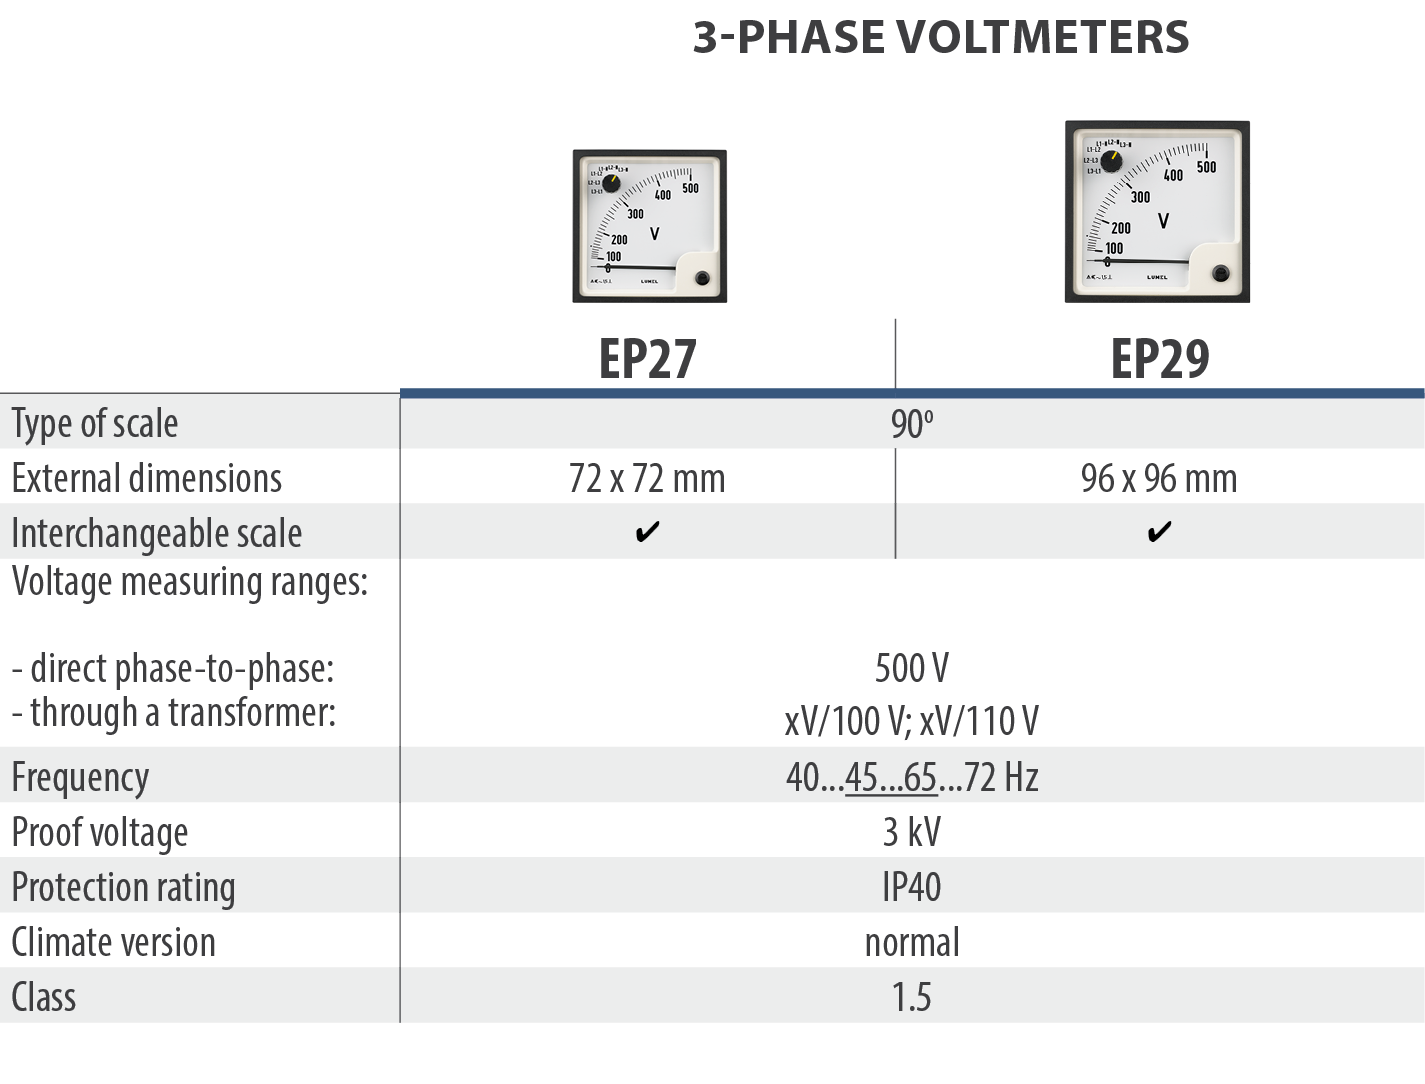 3-phase voltmeters